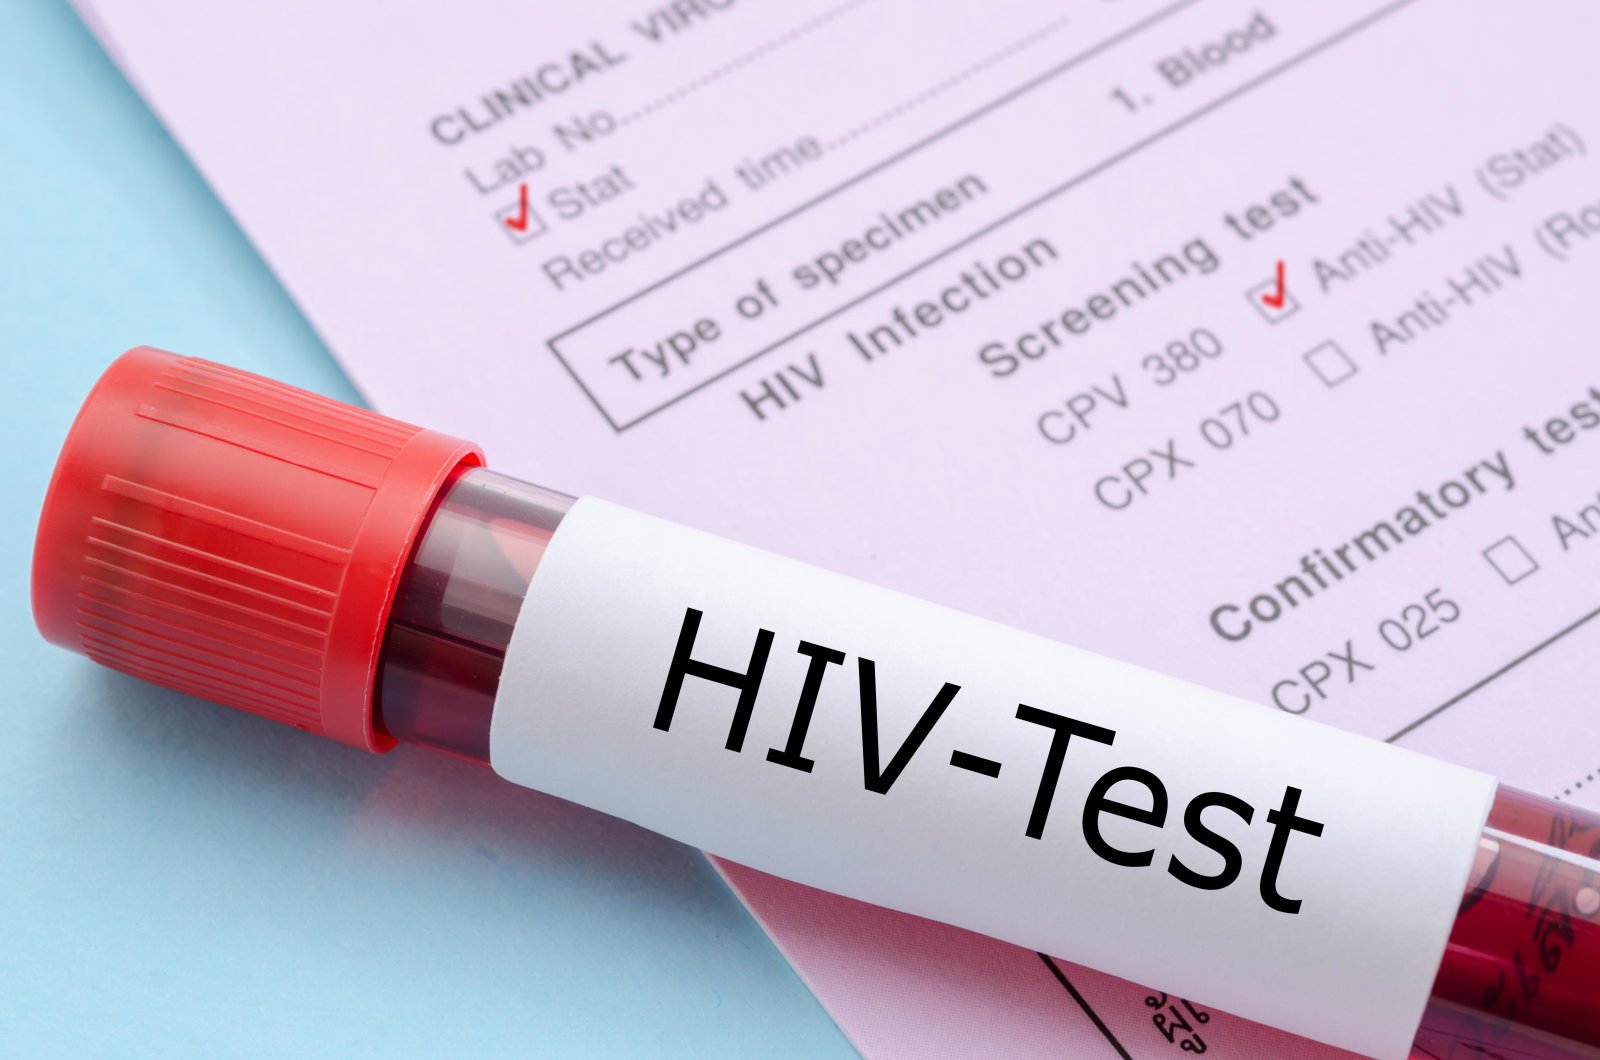 नई एचआईवी वैक्सीन अच्छा परिणाम दिखाया गया है मानव परीक्षणों में